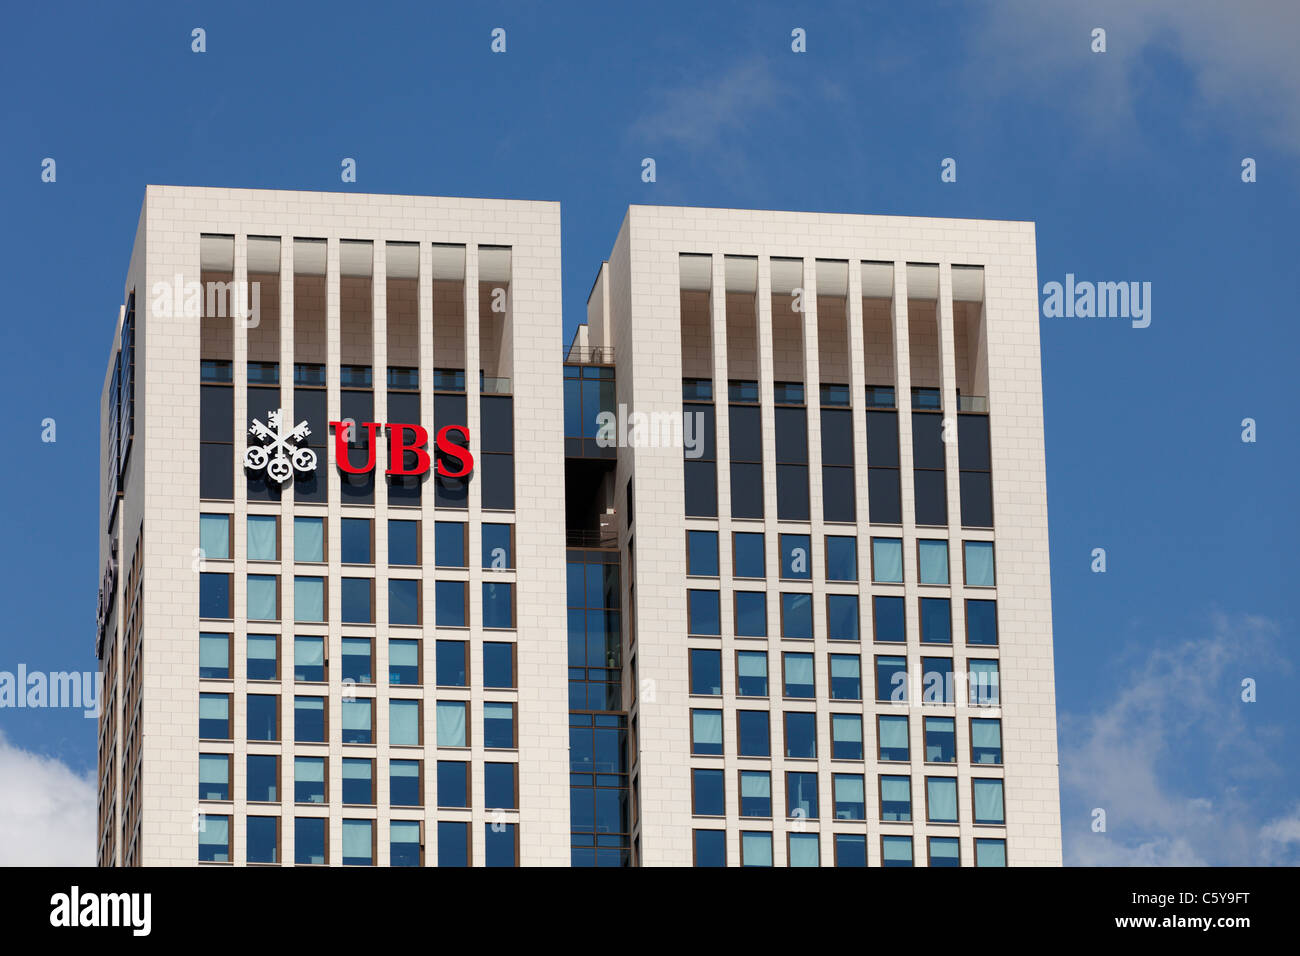 El logo de UBS en el lado de la OpernTurm rascacielos en Frankfurt, Alemania. Foto de stock